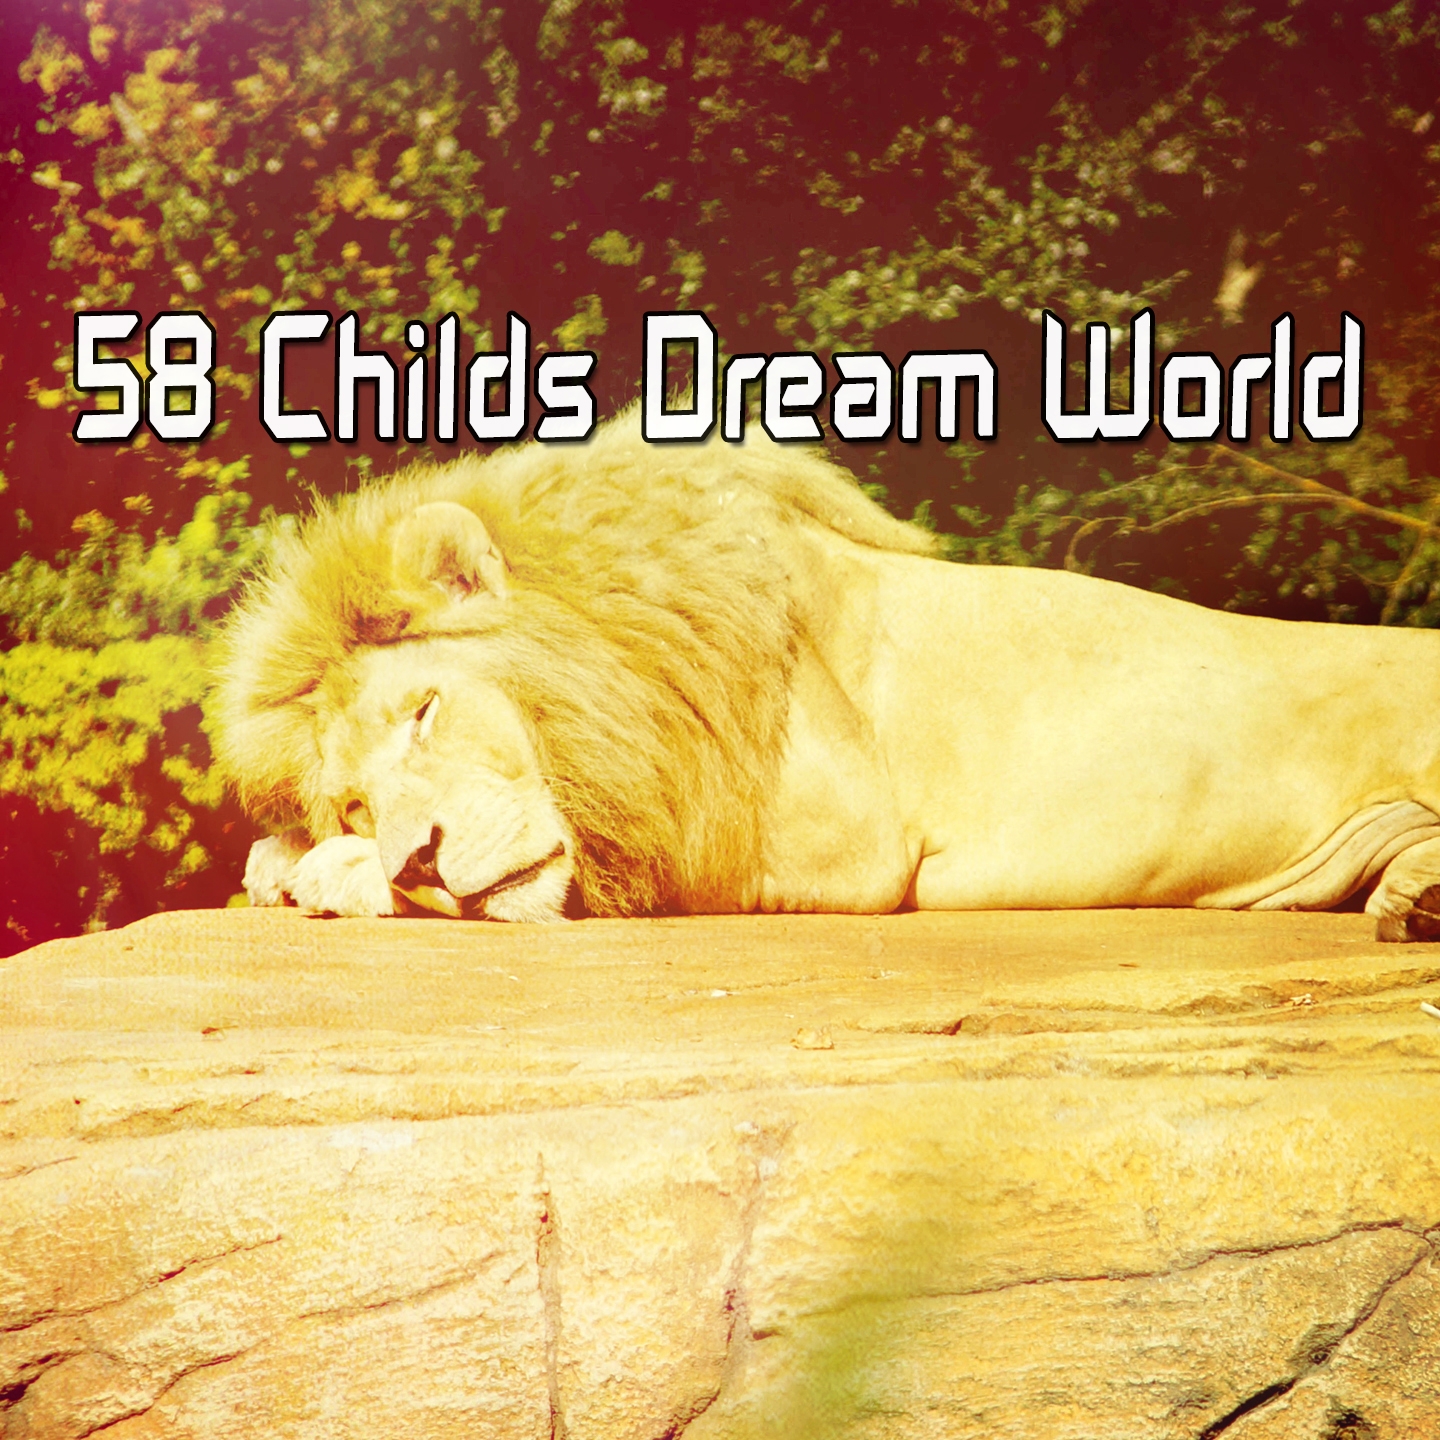 58 Childs Dream World